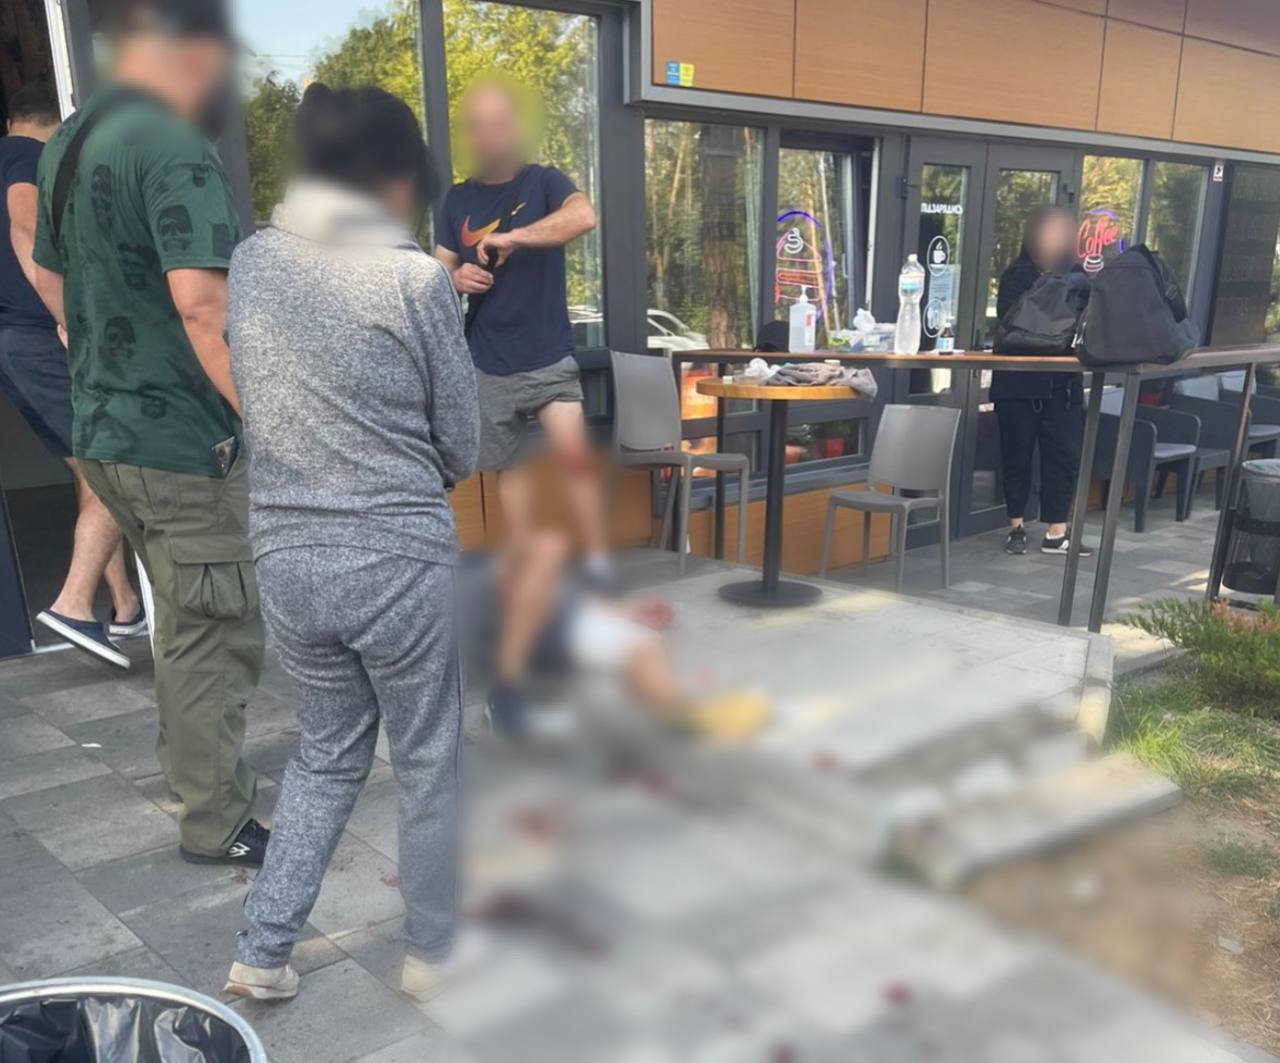 В Киевской области произошла драка возле кафе: нападавшие скрылись, объявлен план "Перехват". Фото